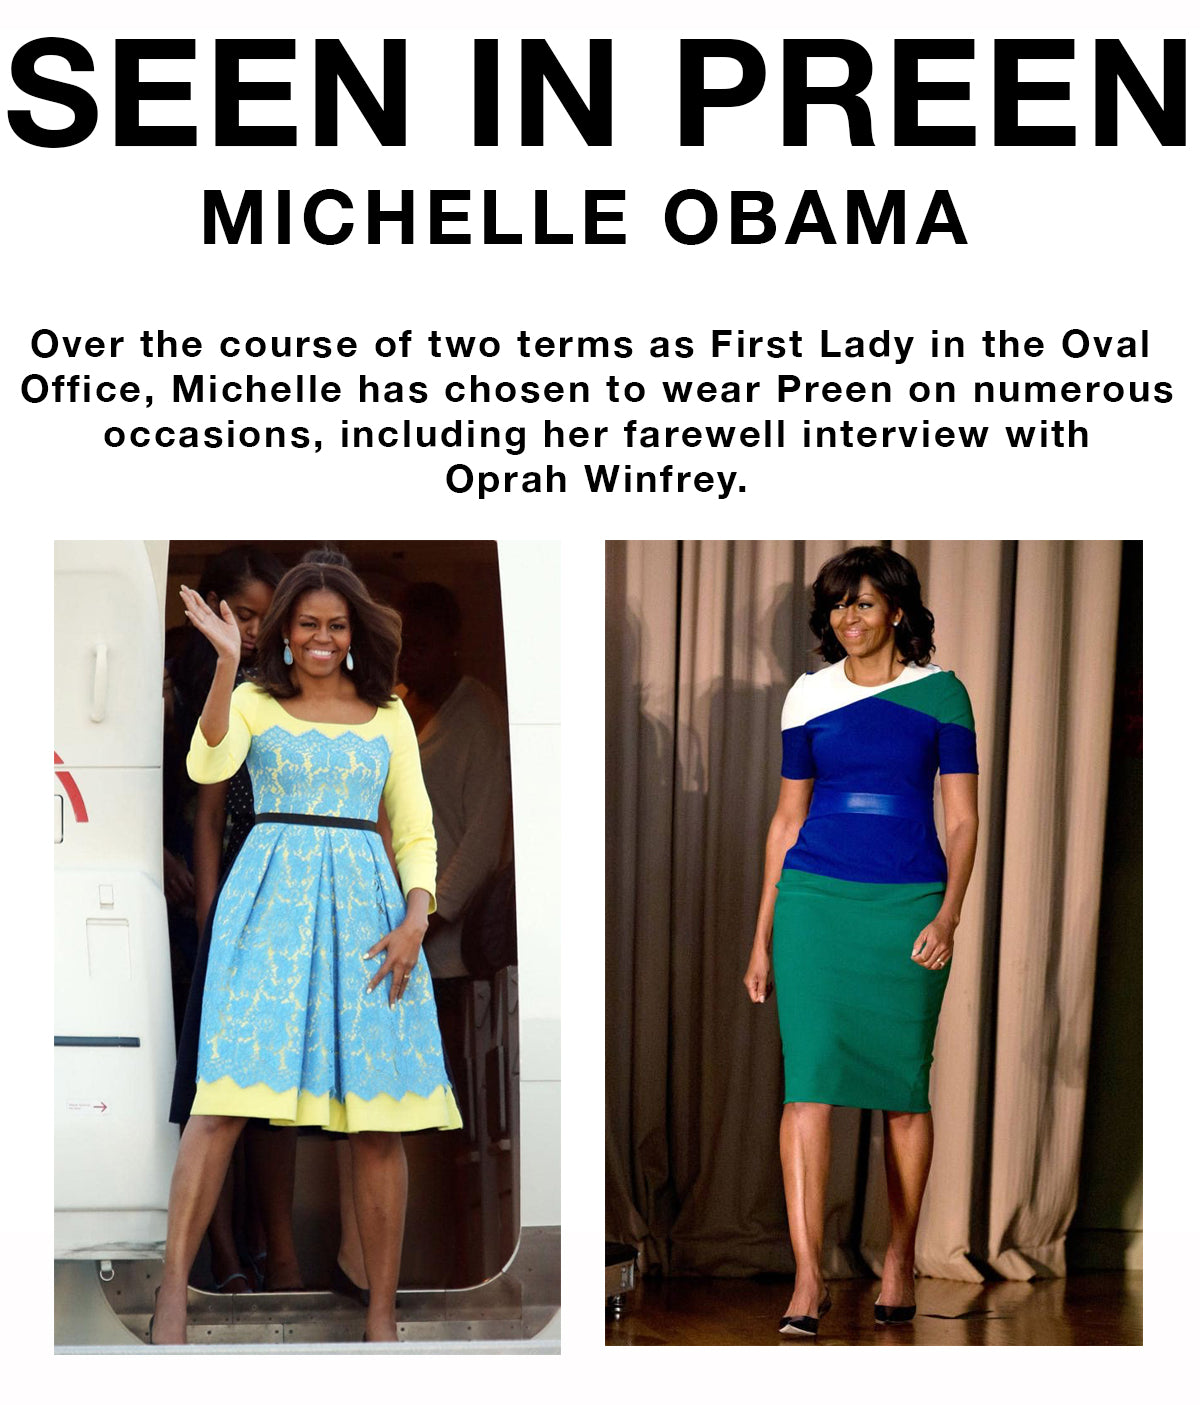 Michelle Obama in Preen